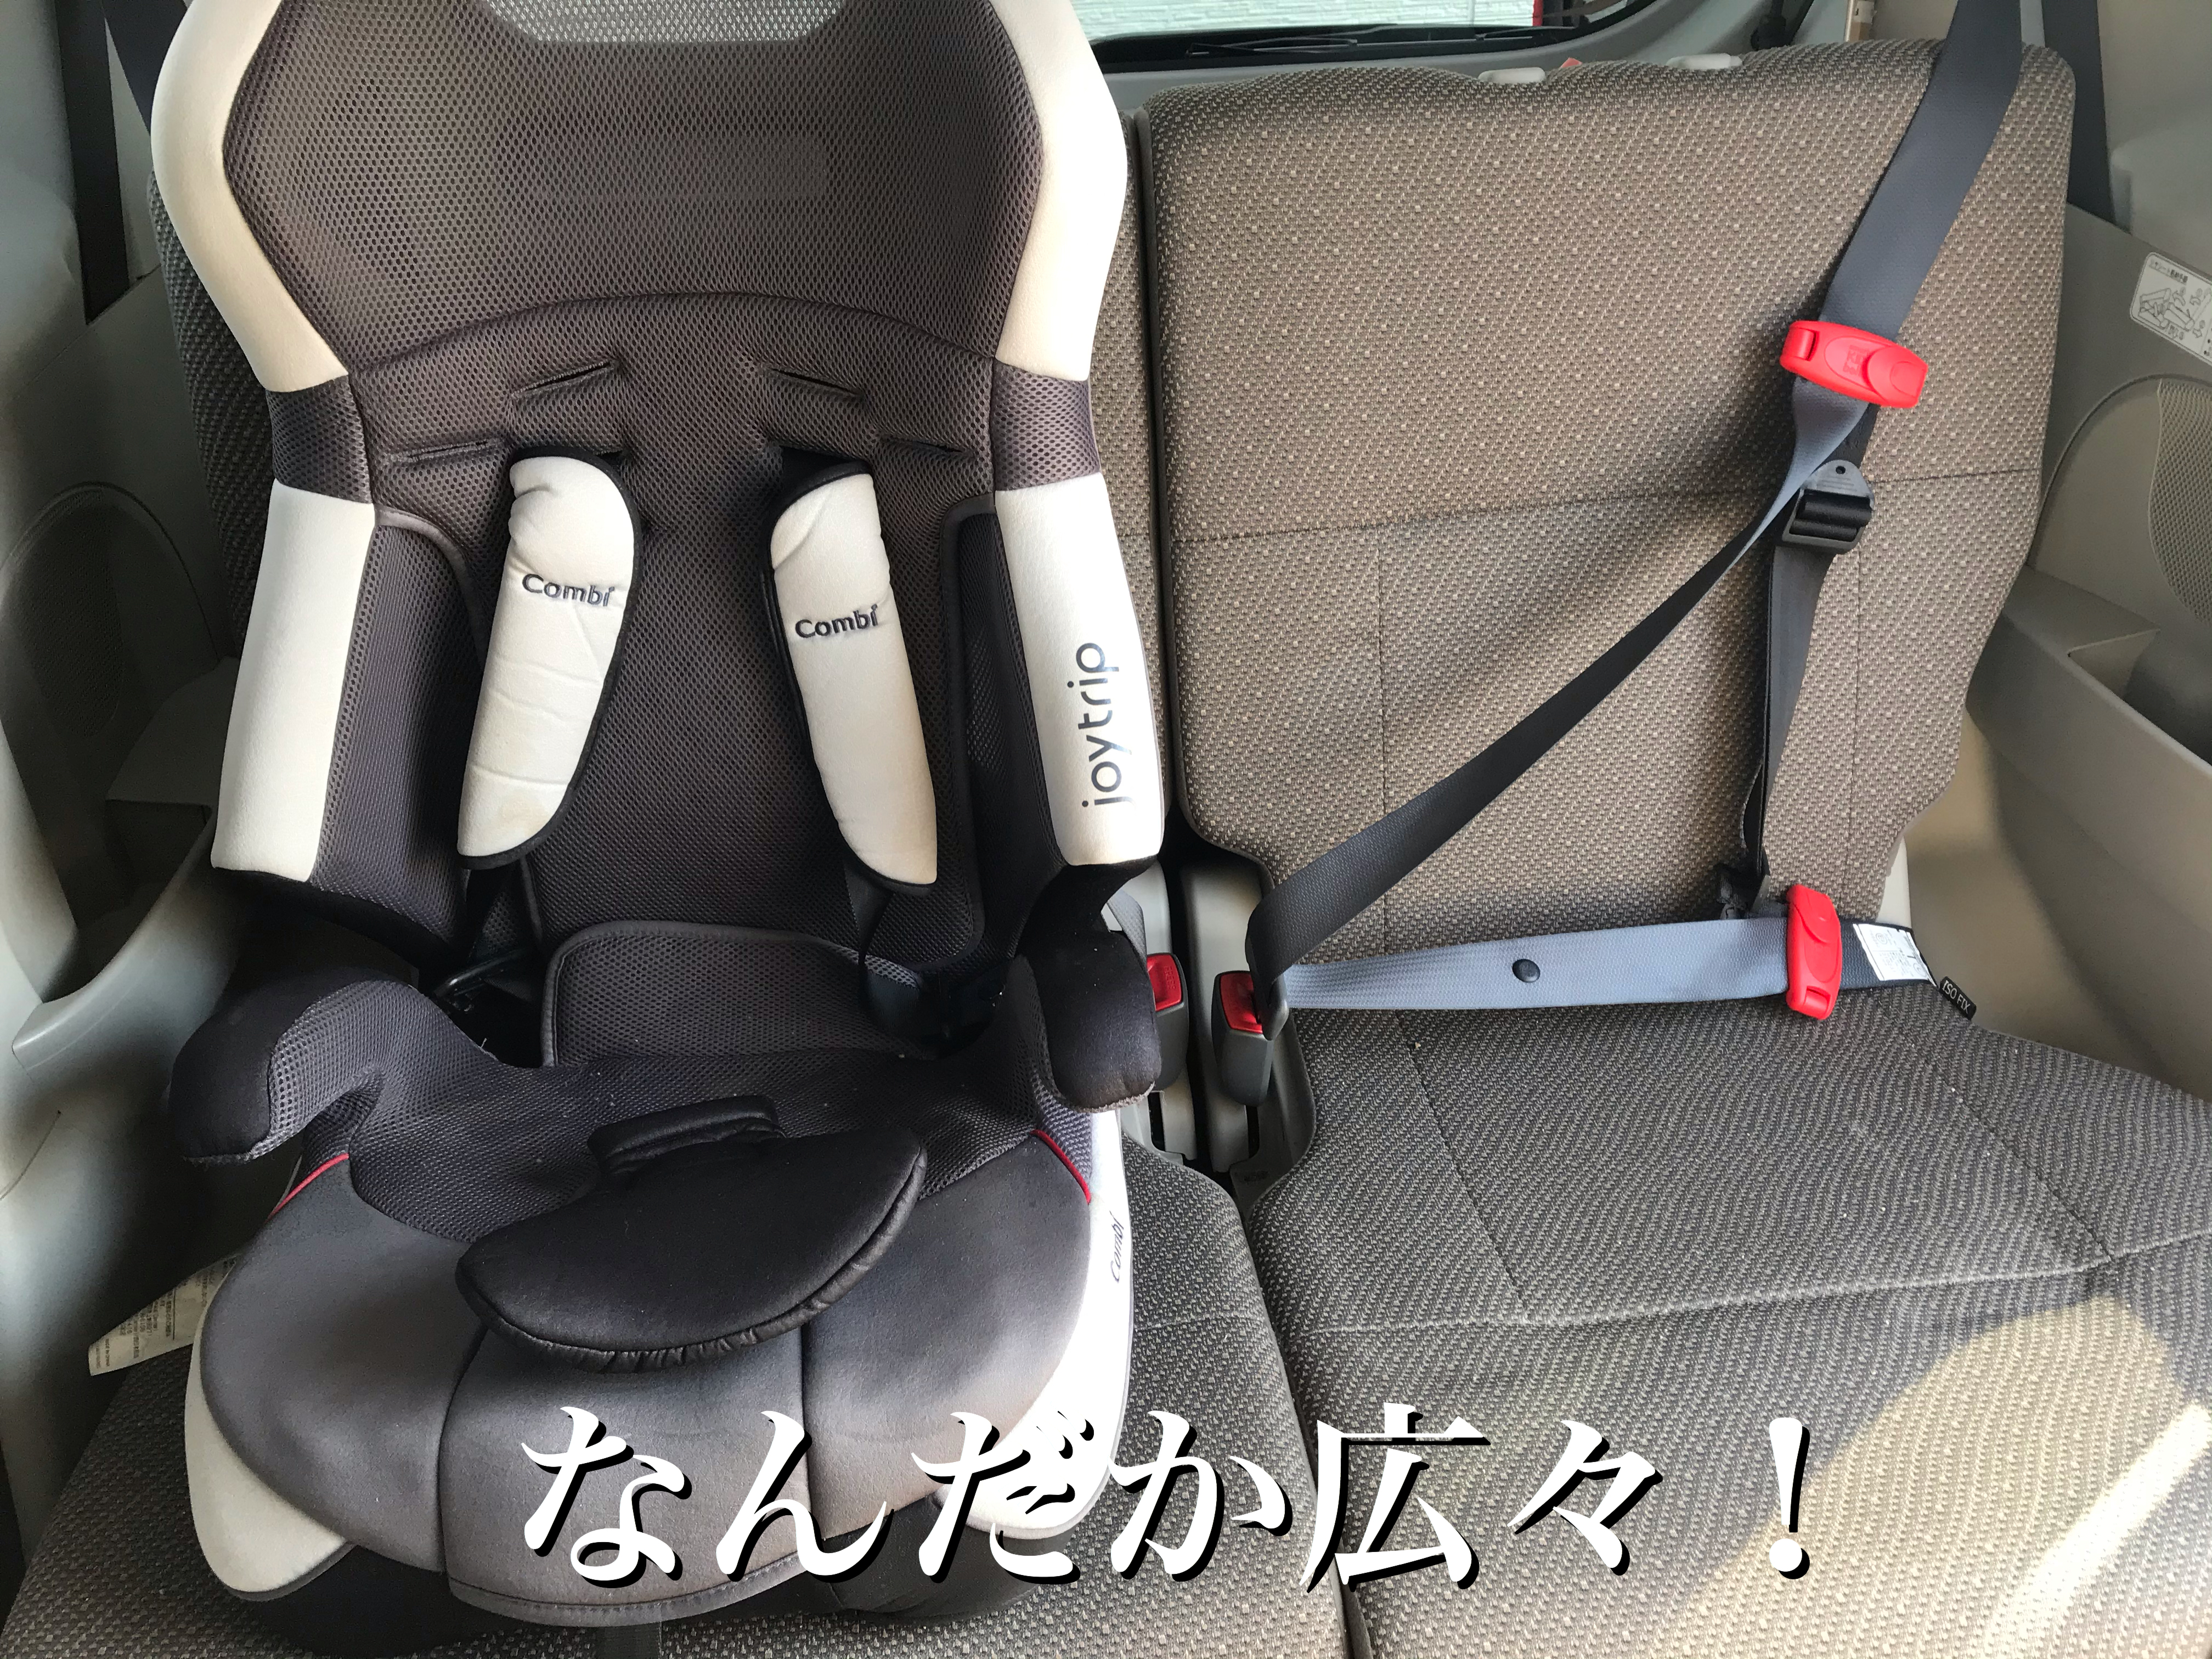 革命 このベルトがあればチャイルドシート不要 ベルト型幼児用補助装置 スマートキッズベルト を使ってみた 良かった5つのポイント ロケットニュース24